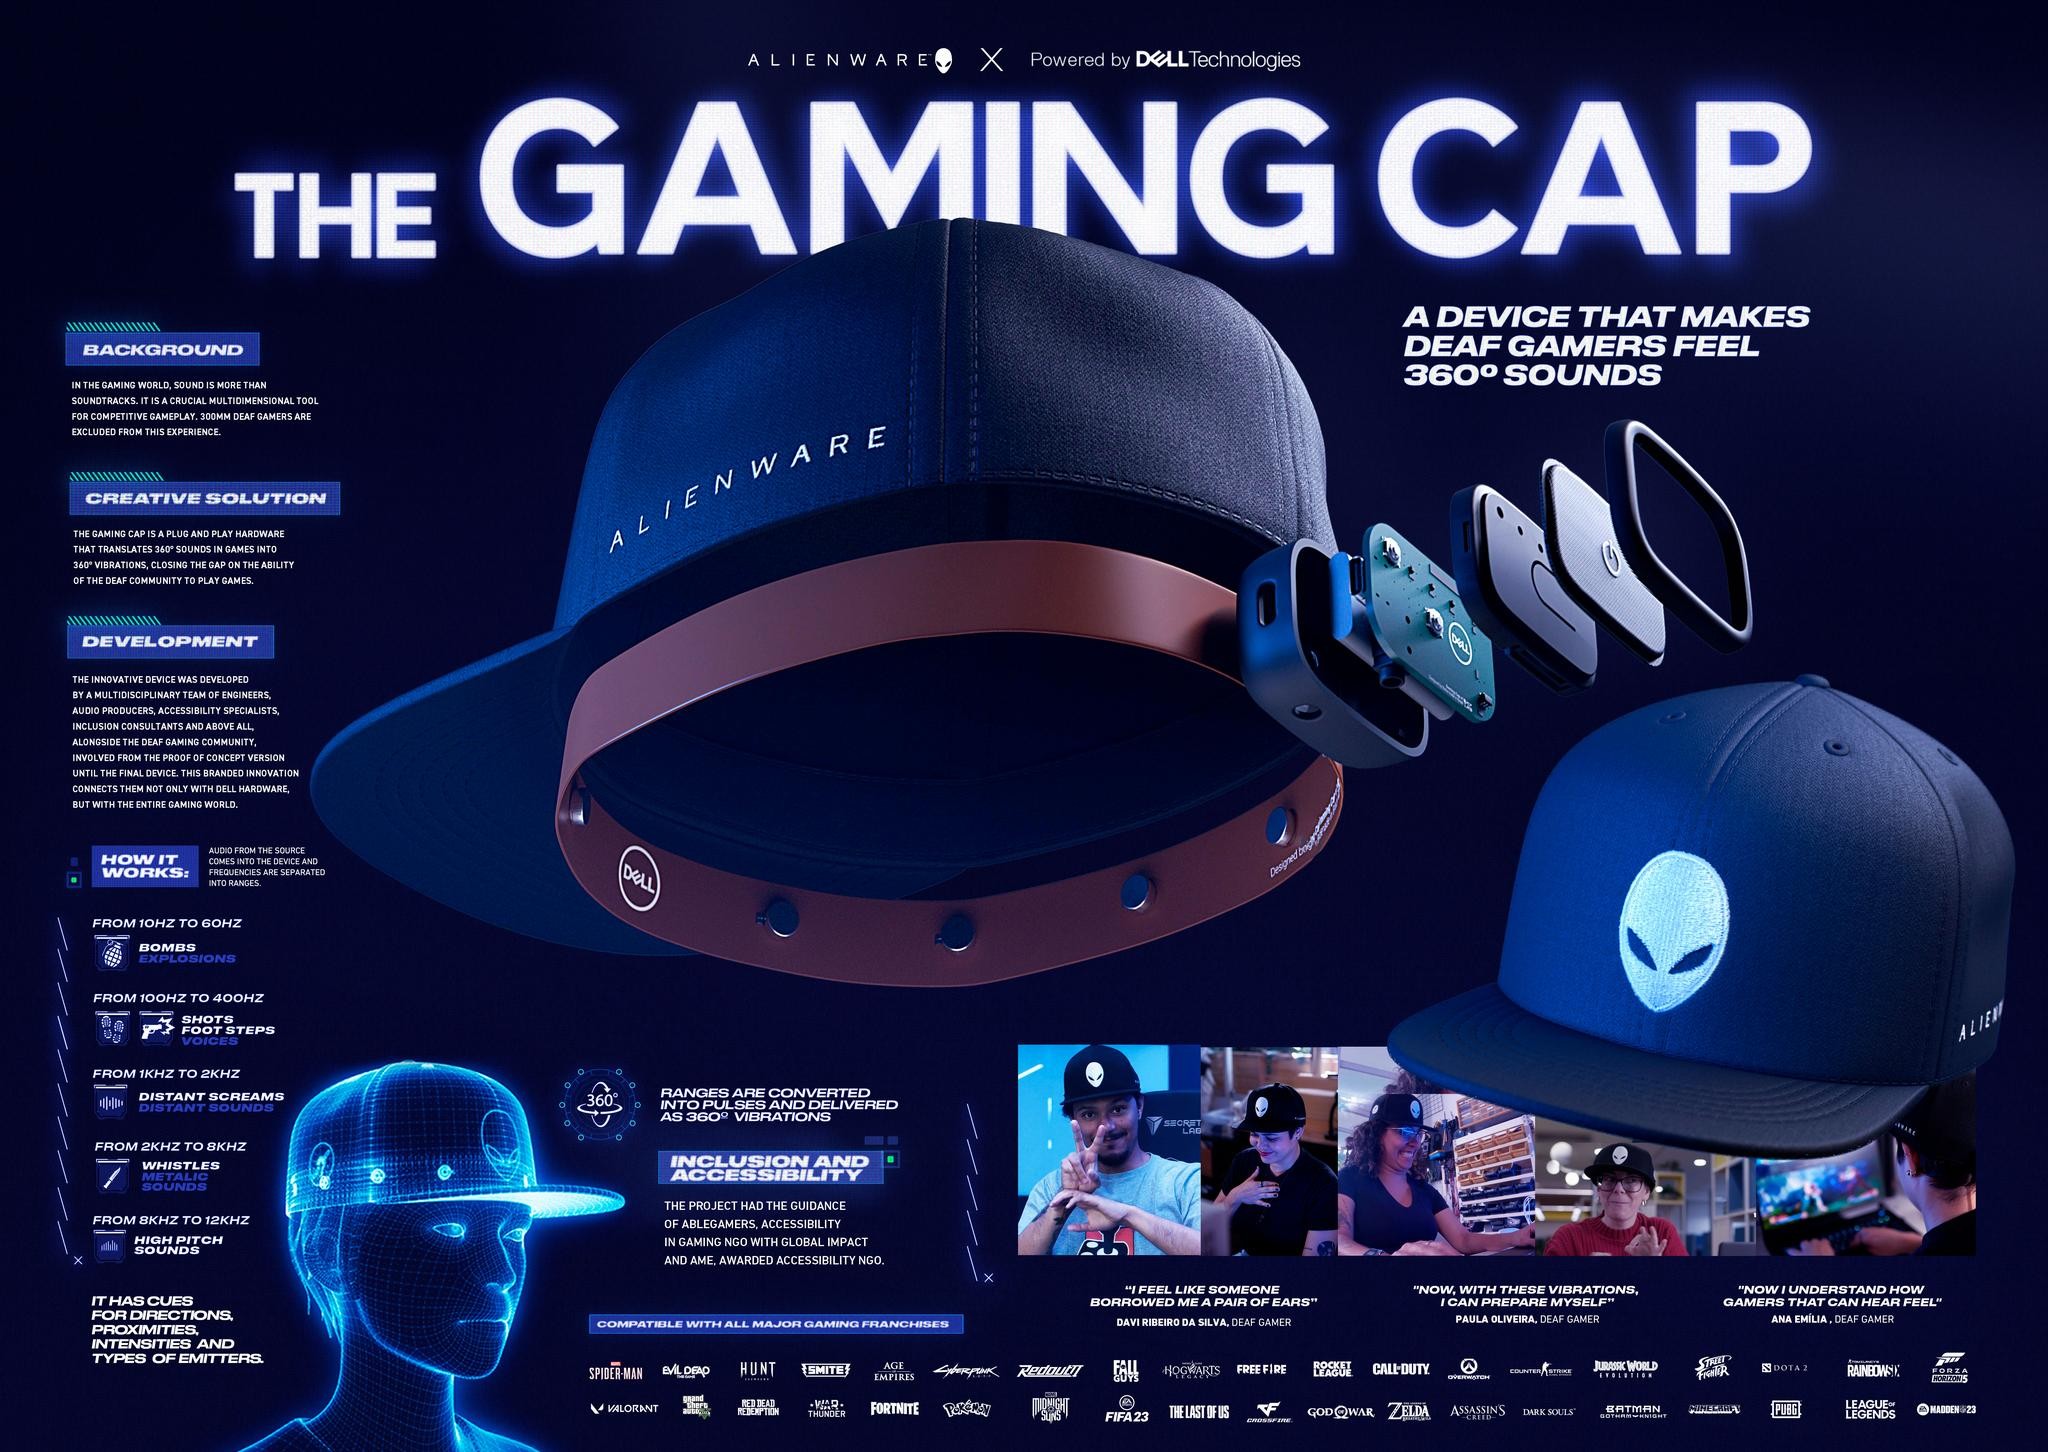 THE GAMING CAP